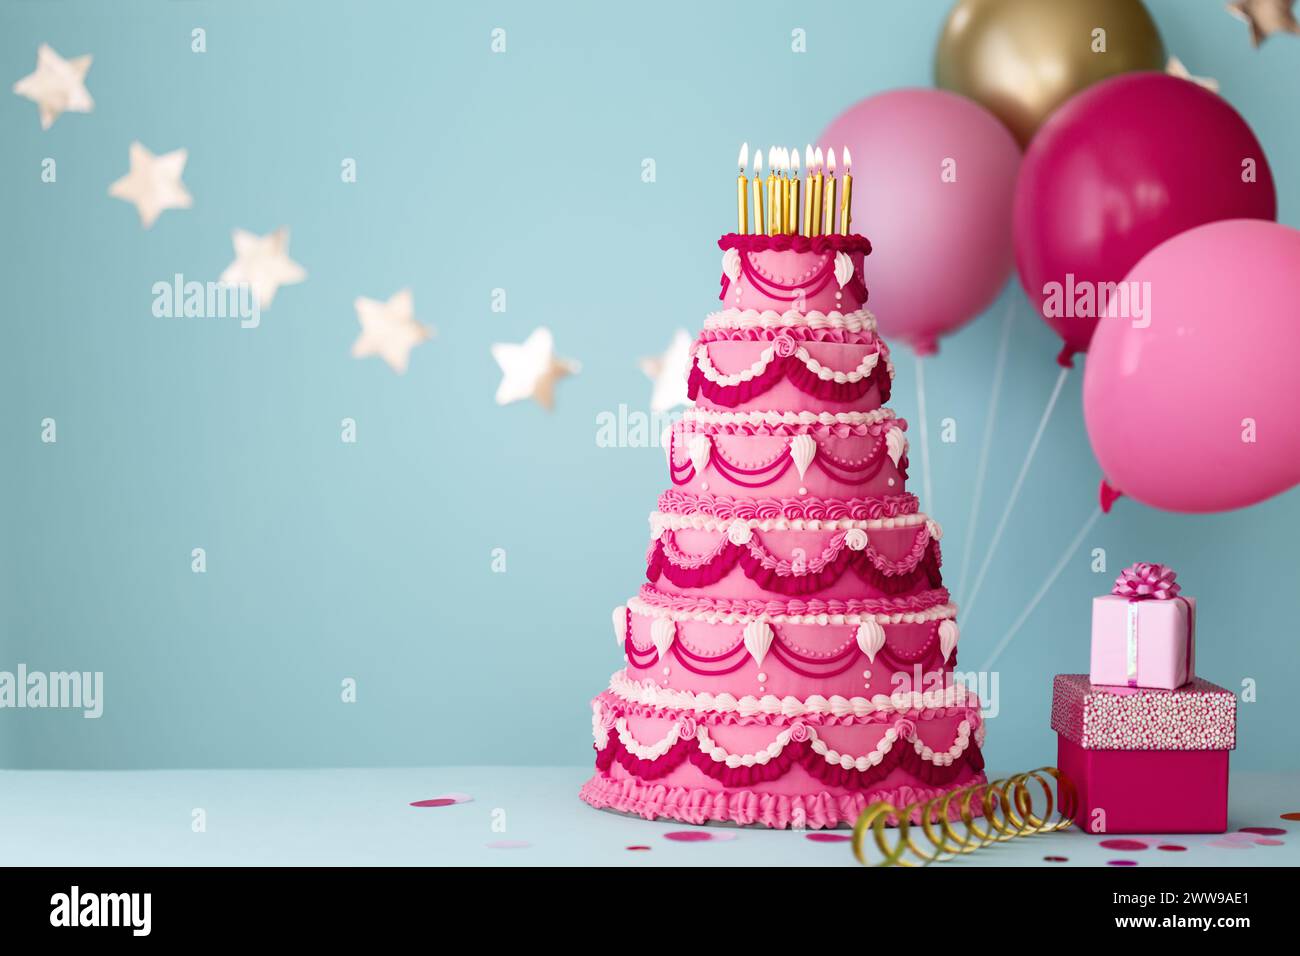 Élaborez un gâteau d'anniversaire rose à plusieurs niveaux avec des cadeaux et des ballons d'anniversaire pour une fête d'anniversaire Banque D'Images